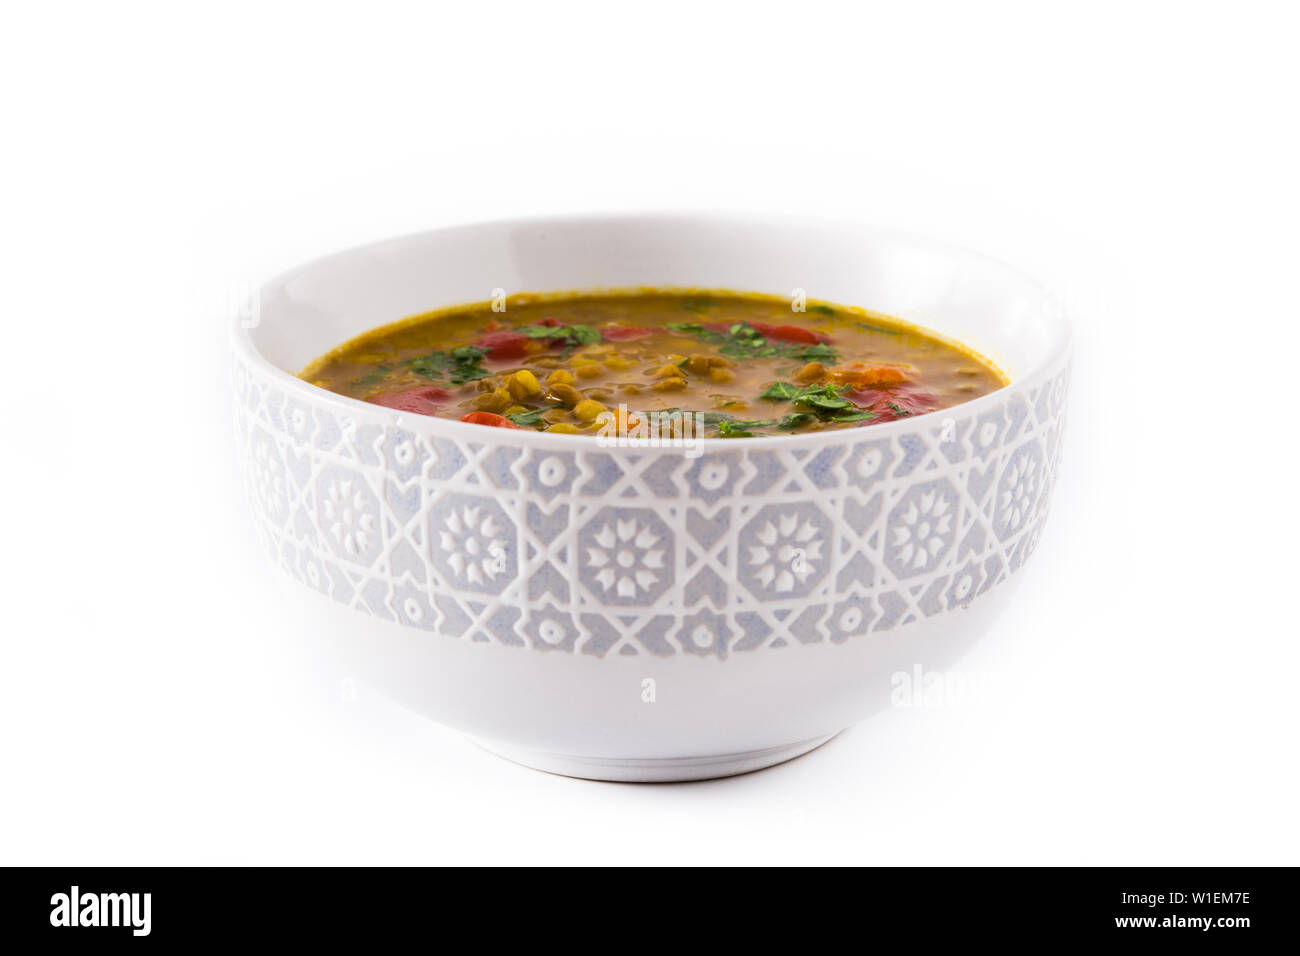 Soupe aux lentilles indiennes dal (dhal) dans un bol isolé sur fond blanc. Banque D'Images